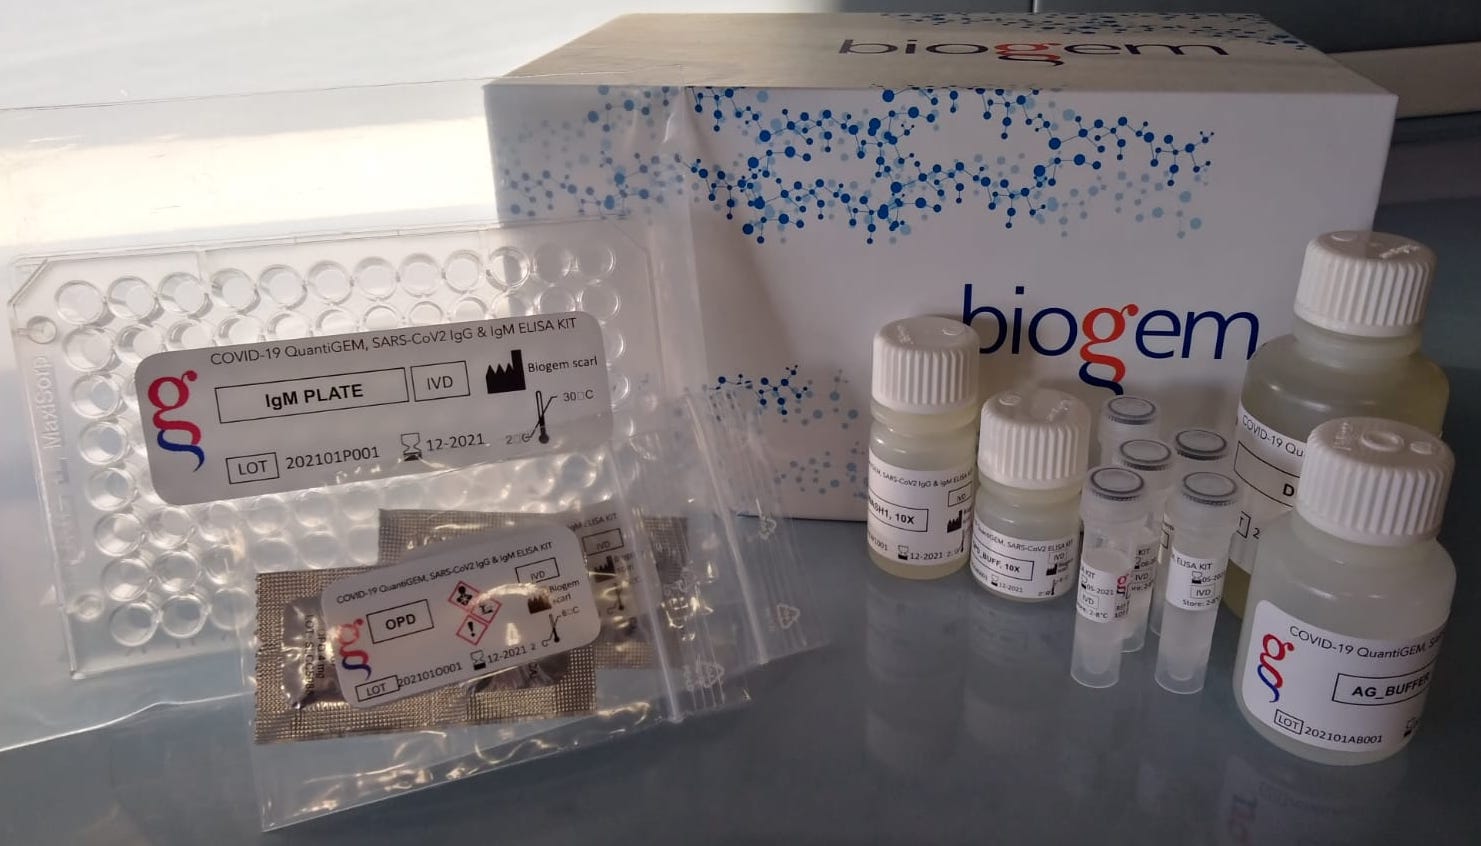 Biogem lancia test quantitativo per supportare campagna vaccinale anti COVID 19